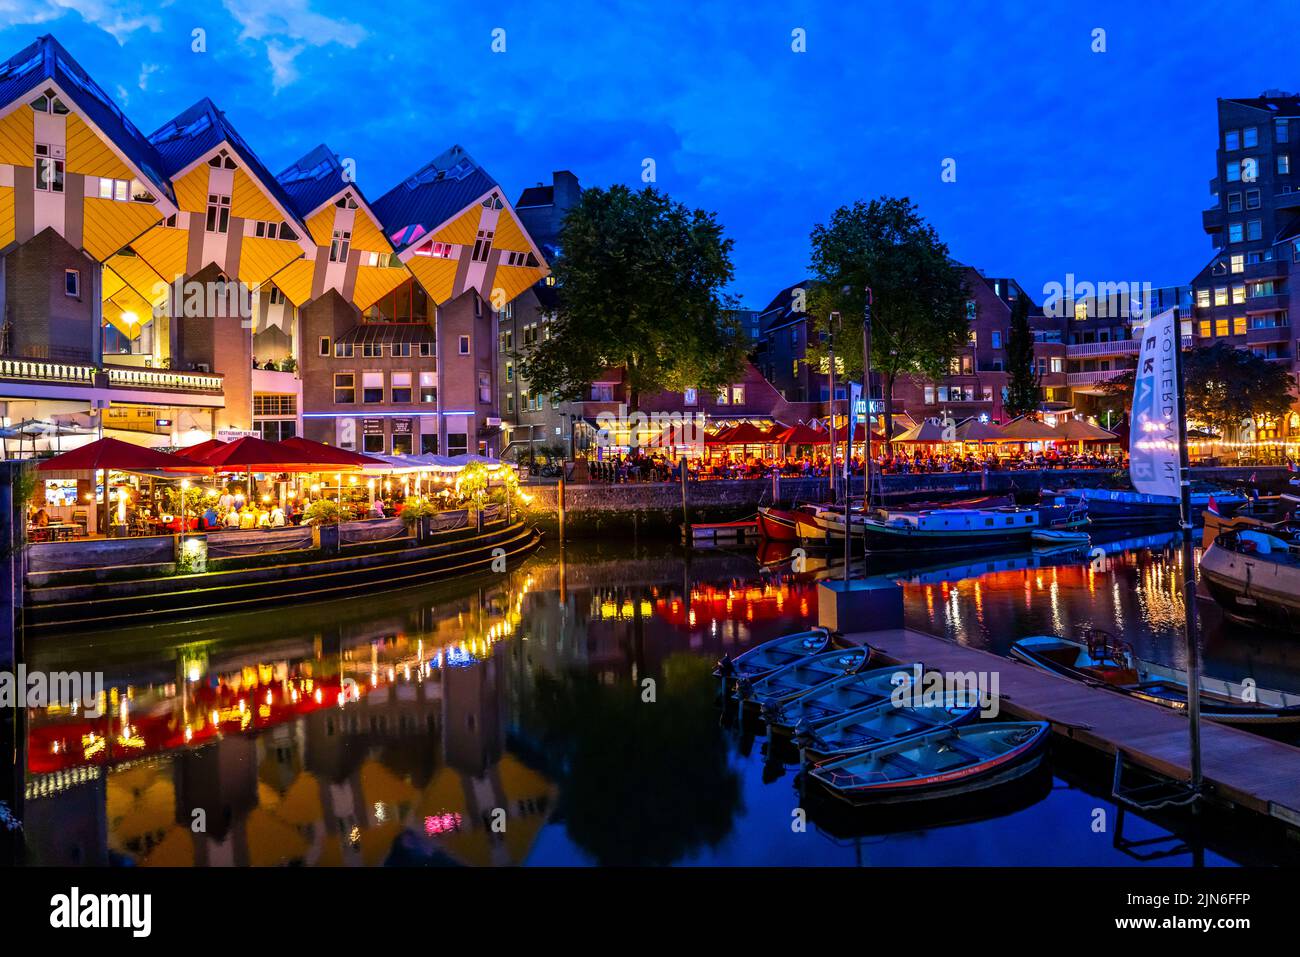 Centro de Rotterdam, Oudehaven, puerto histórico, barcos históricos, casas de cubos, Flat, cubo de Kijk por el arquitecto holandés Piet Blom, Países Bajos, Foto de stock